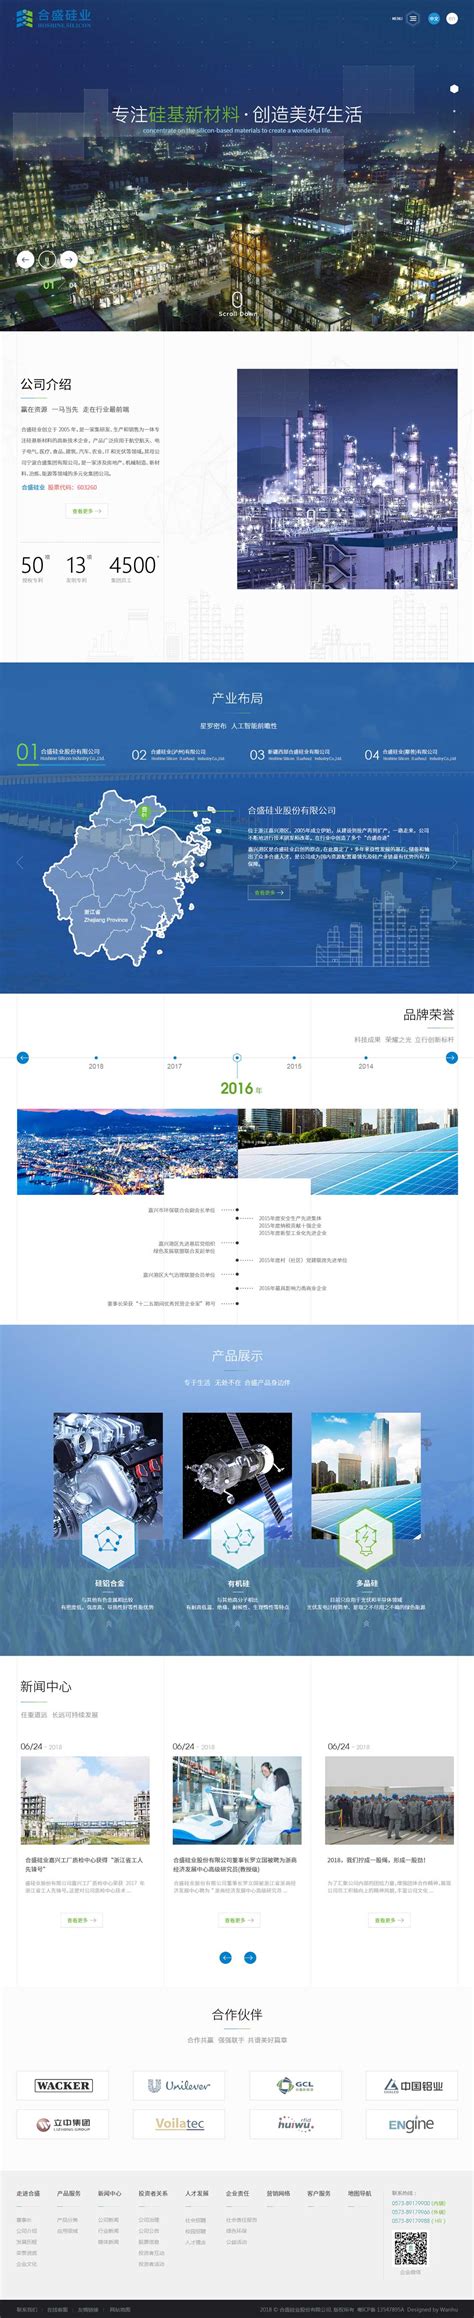 合盛硅业股份有限公司-杭州万户网络设计制作网站